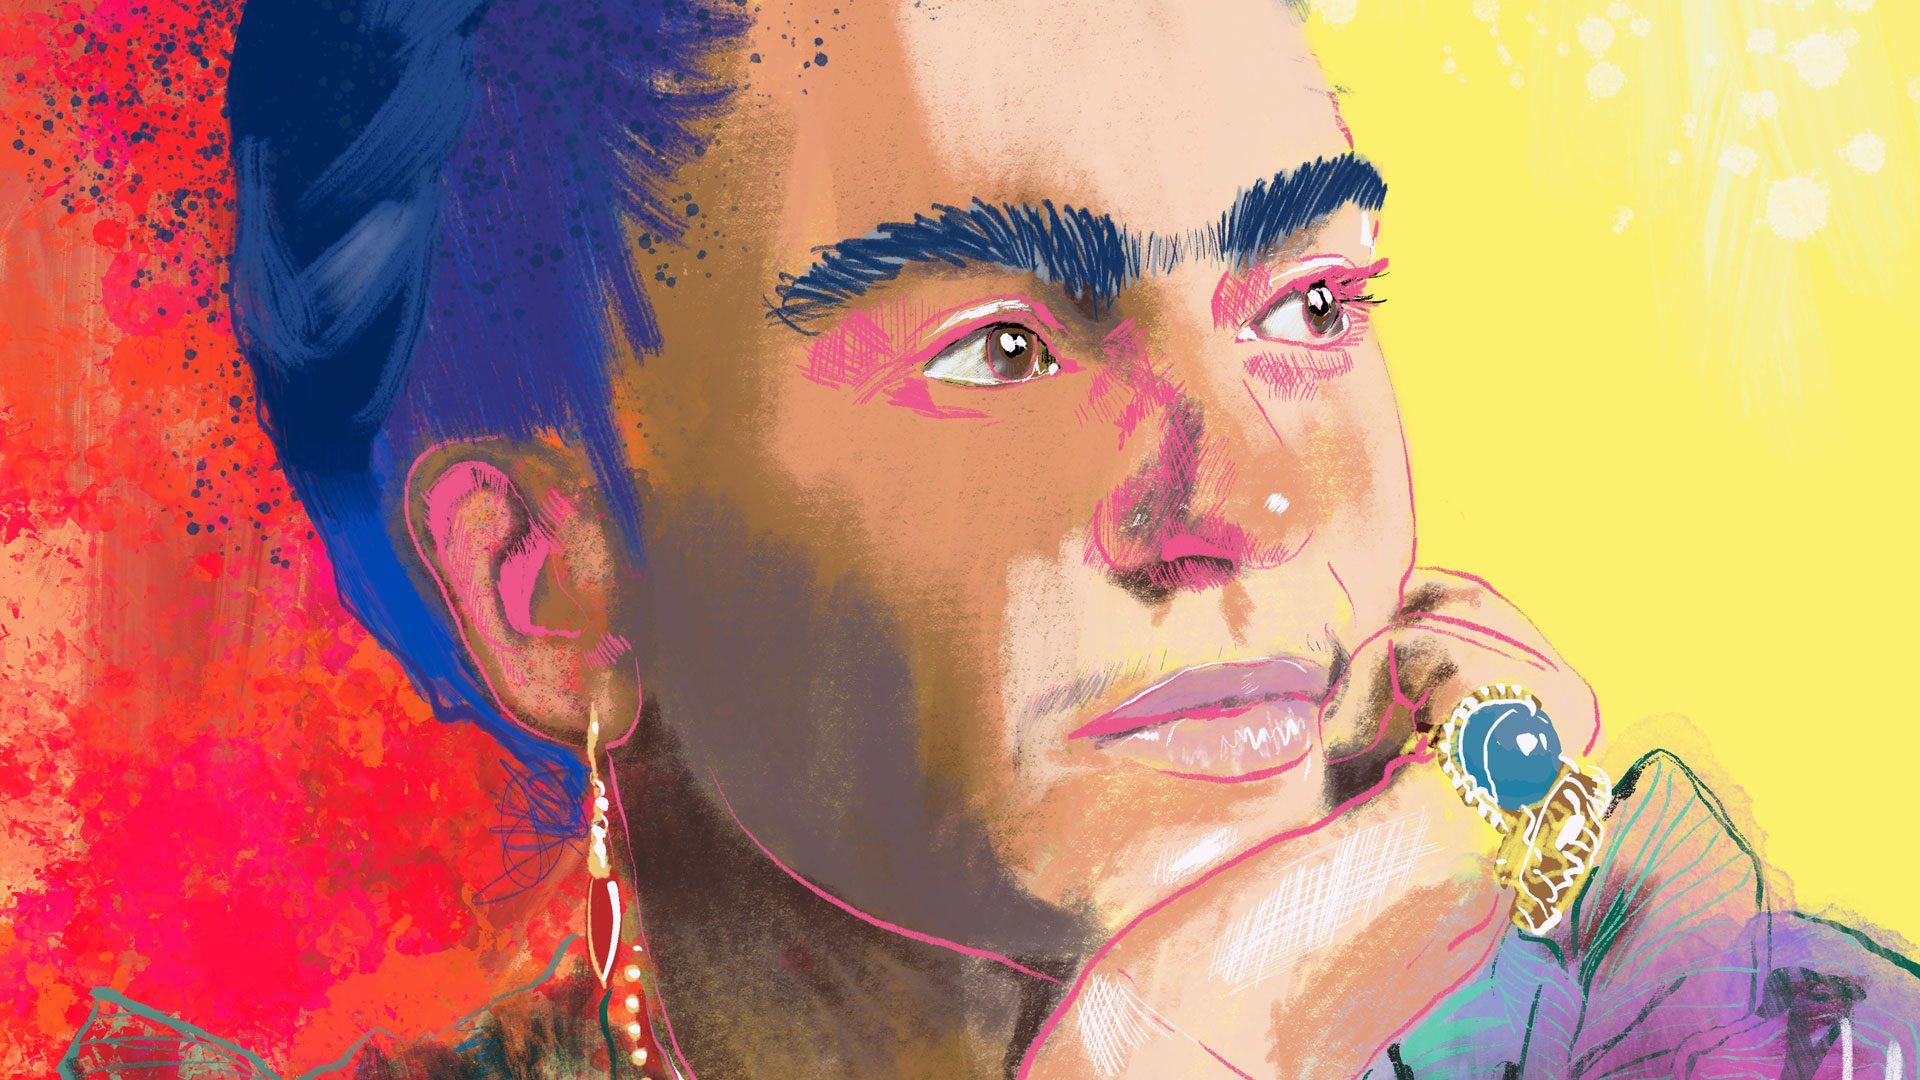 Frida Kahlo portrait hero banner